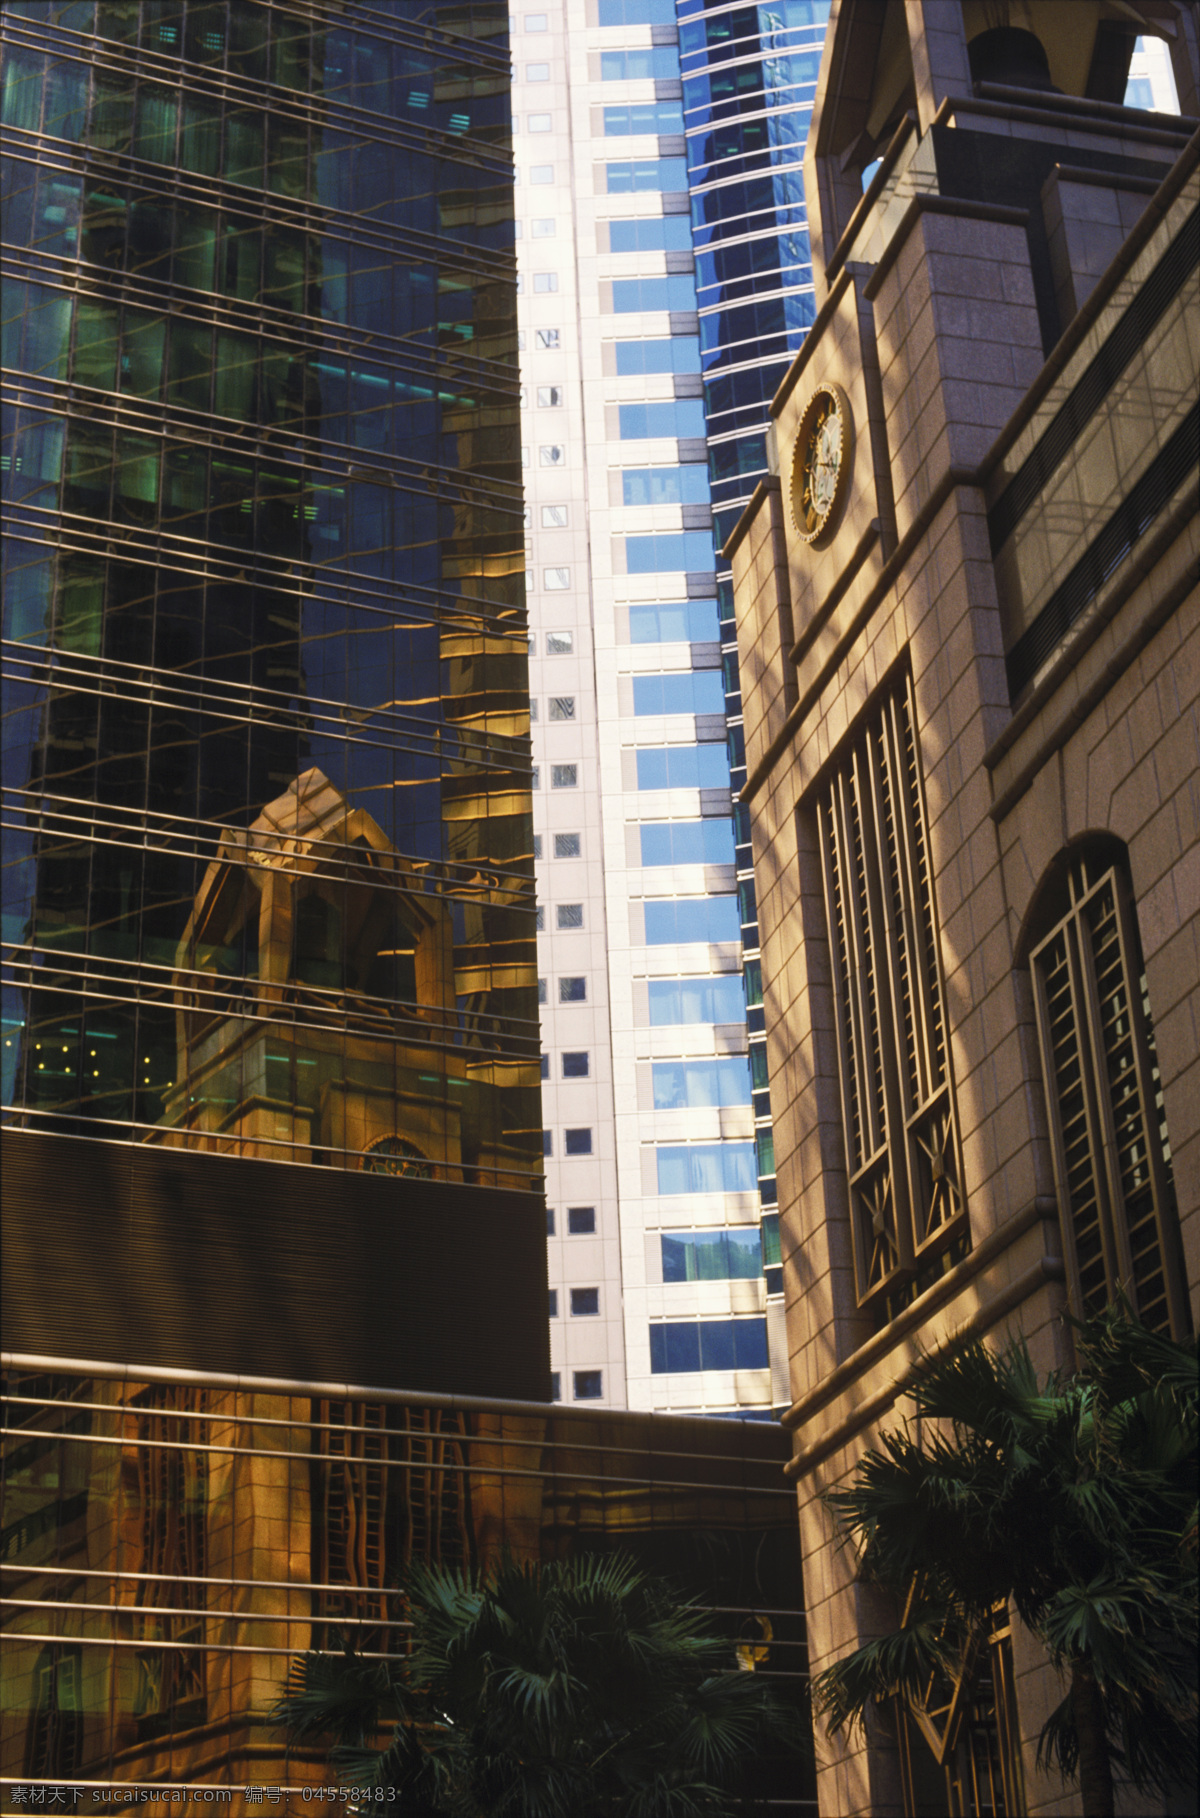 香港 高楼大厦 钟楼 城市风光 建筑 风景 繁华 繁荣 摄影图 高清图片 环境家居